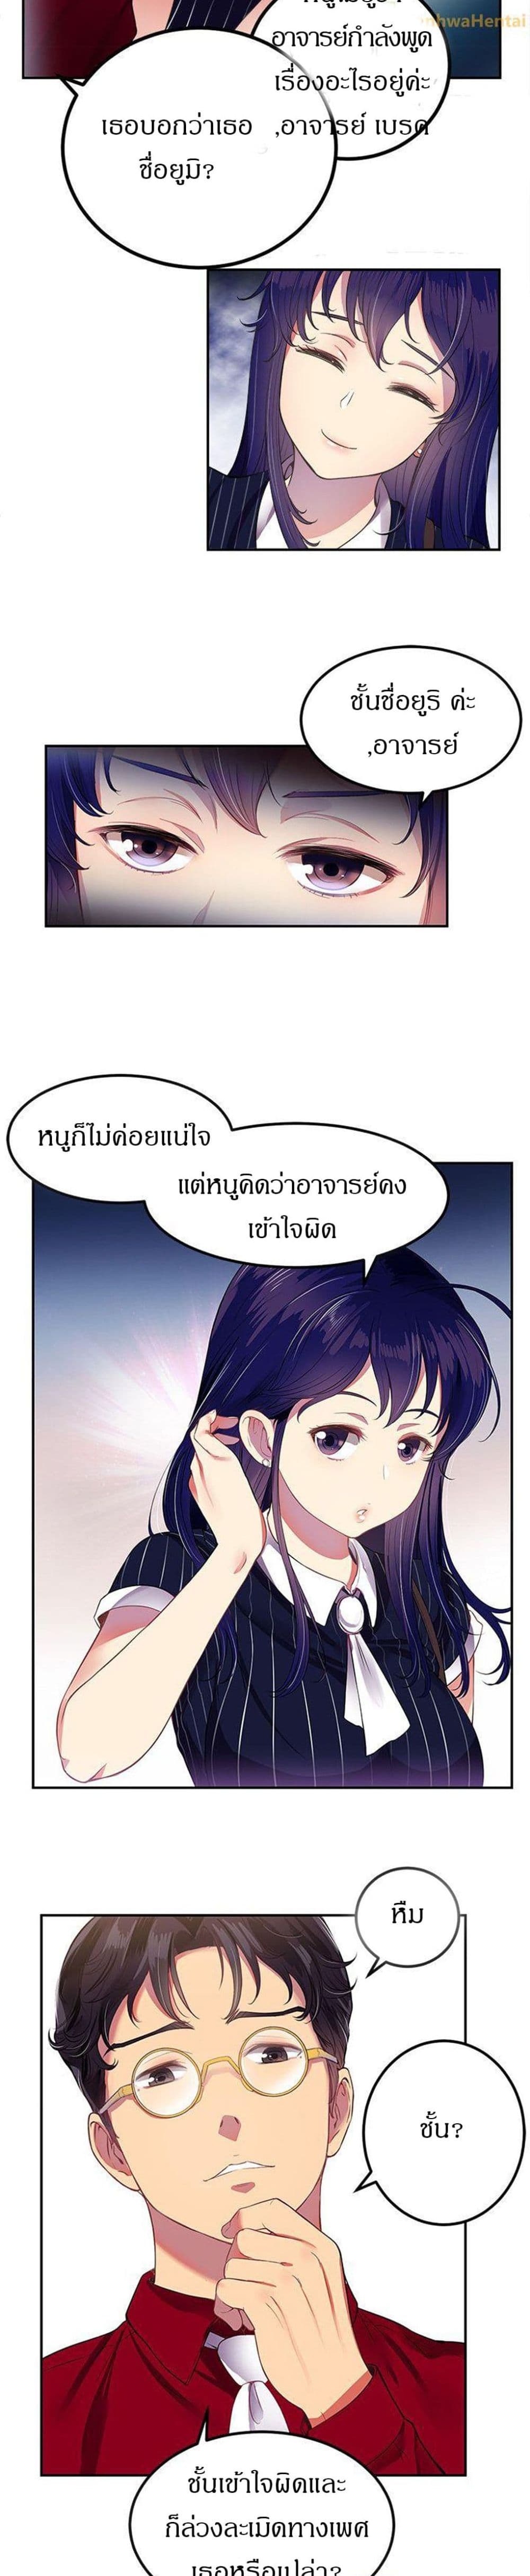 Yuri’s Part Time Job 3 (7)